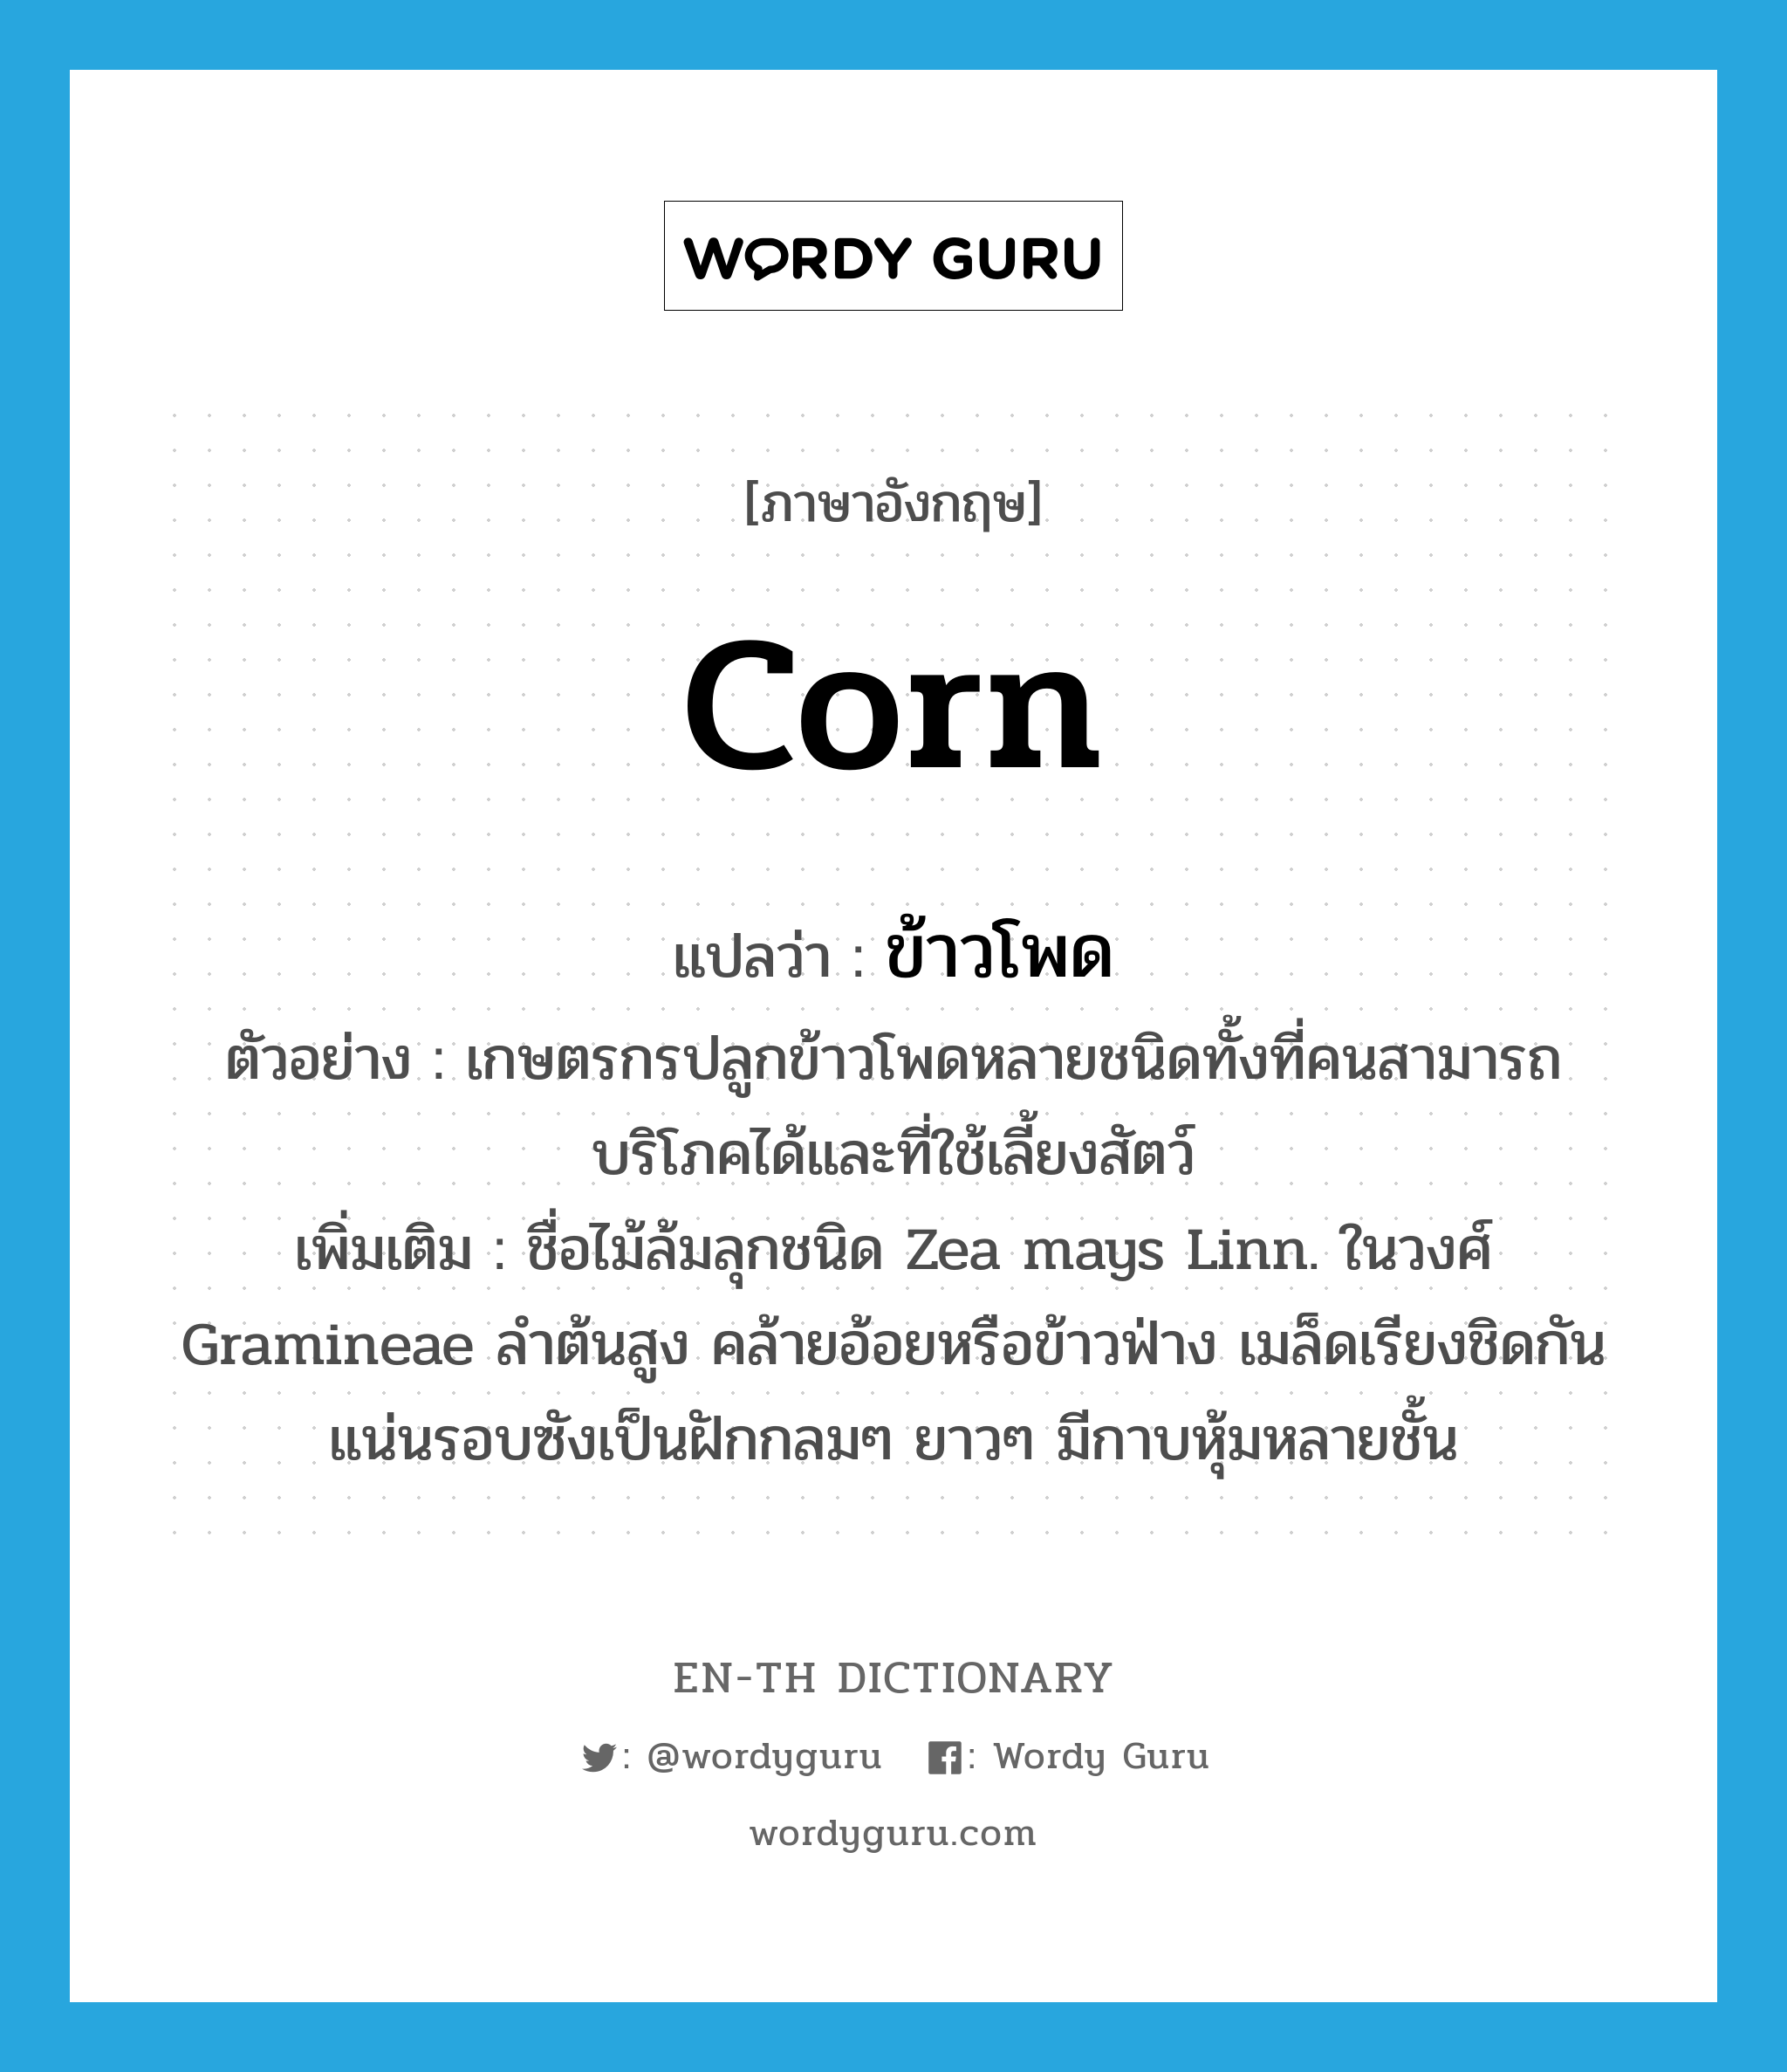 corn แปลว่า?, คำศัพท์ภาษาอังกฤษ corn แปลว่า ข้าวโพด ประเภท N ตัวอย่าง เกษตรกรปลูกข้าวโพดหลายชนิดทั้งที่คนสามารถบริโภคได้และที่ใช้เลี้ยงสัตว์ เพิ่มเติม ชื่อไม้ล้มลุกชนิด Zea mays Linn. ในวงศ์ Gramineae ลำต้นสูง คล้ายอ้อยหรือข้าวฟ่าง เมล็ดเรียงชิดกันแน่นรอบซังเป็นฝักกลมๆ ยาวๆ มีกาบหุ้มหลายชั้น หมวด N